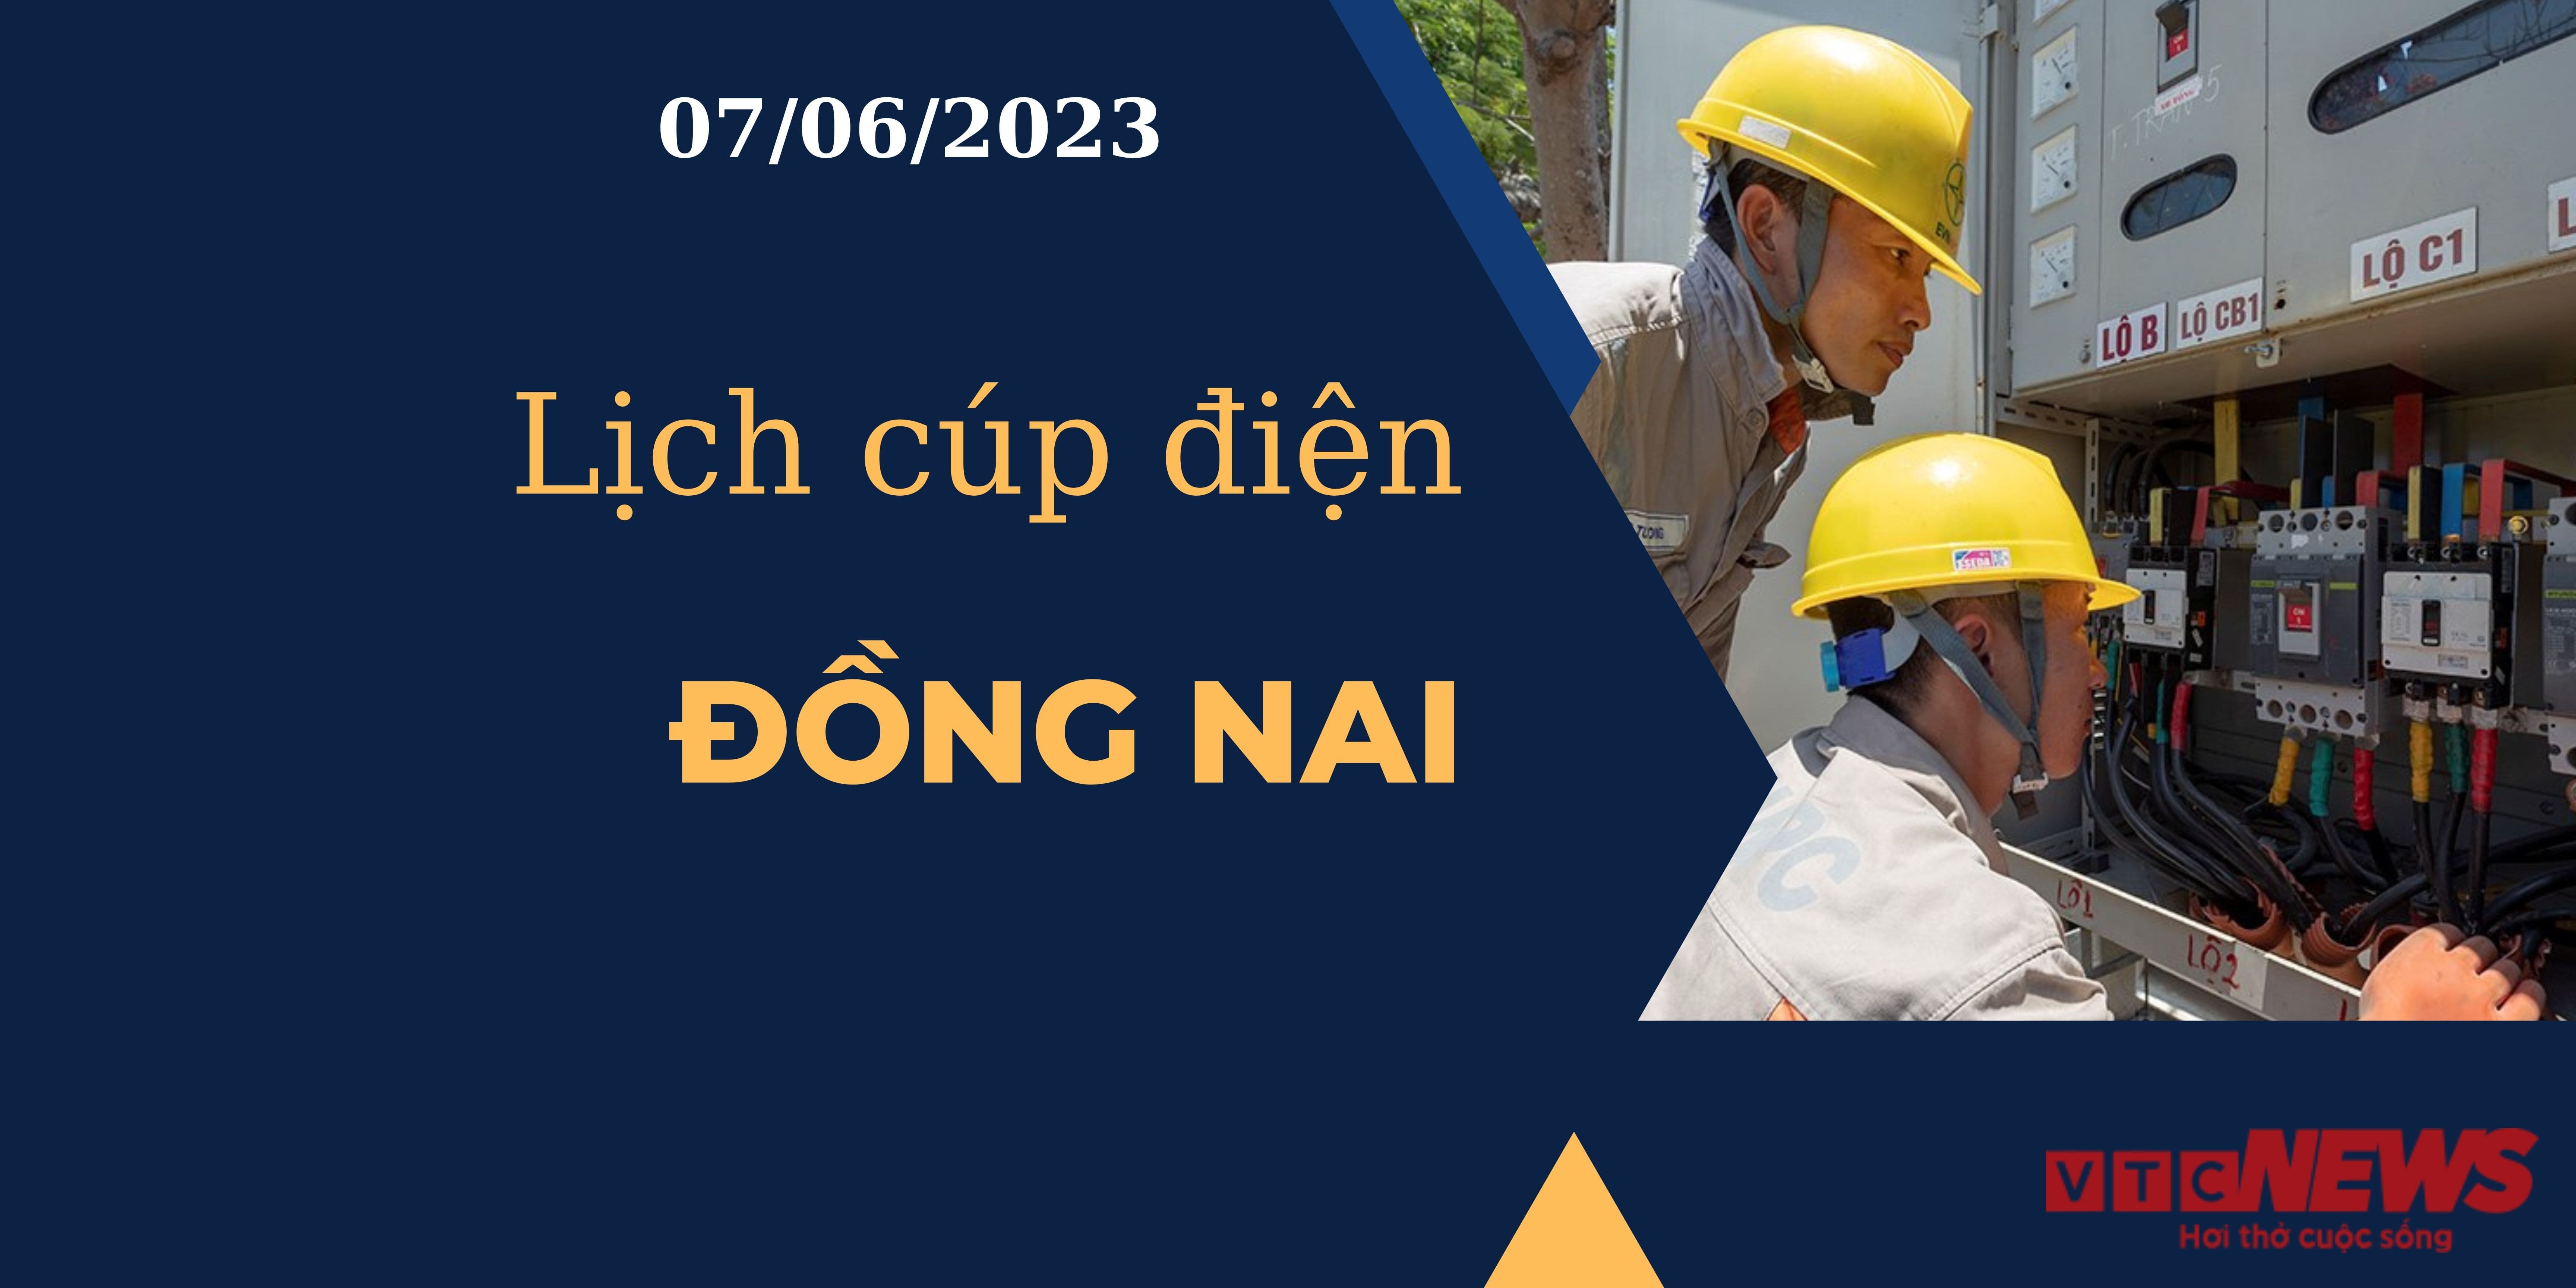 Lịch cúp điện hôm nay ngày 07/06/2023 tại Đồng Nai - 1